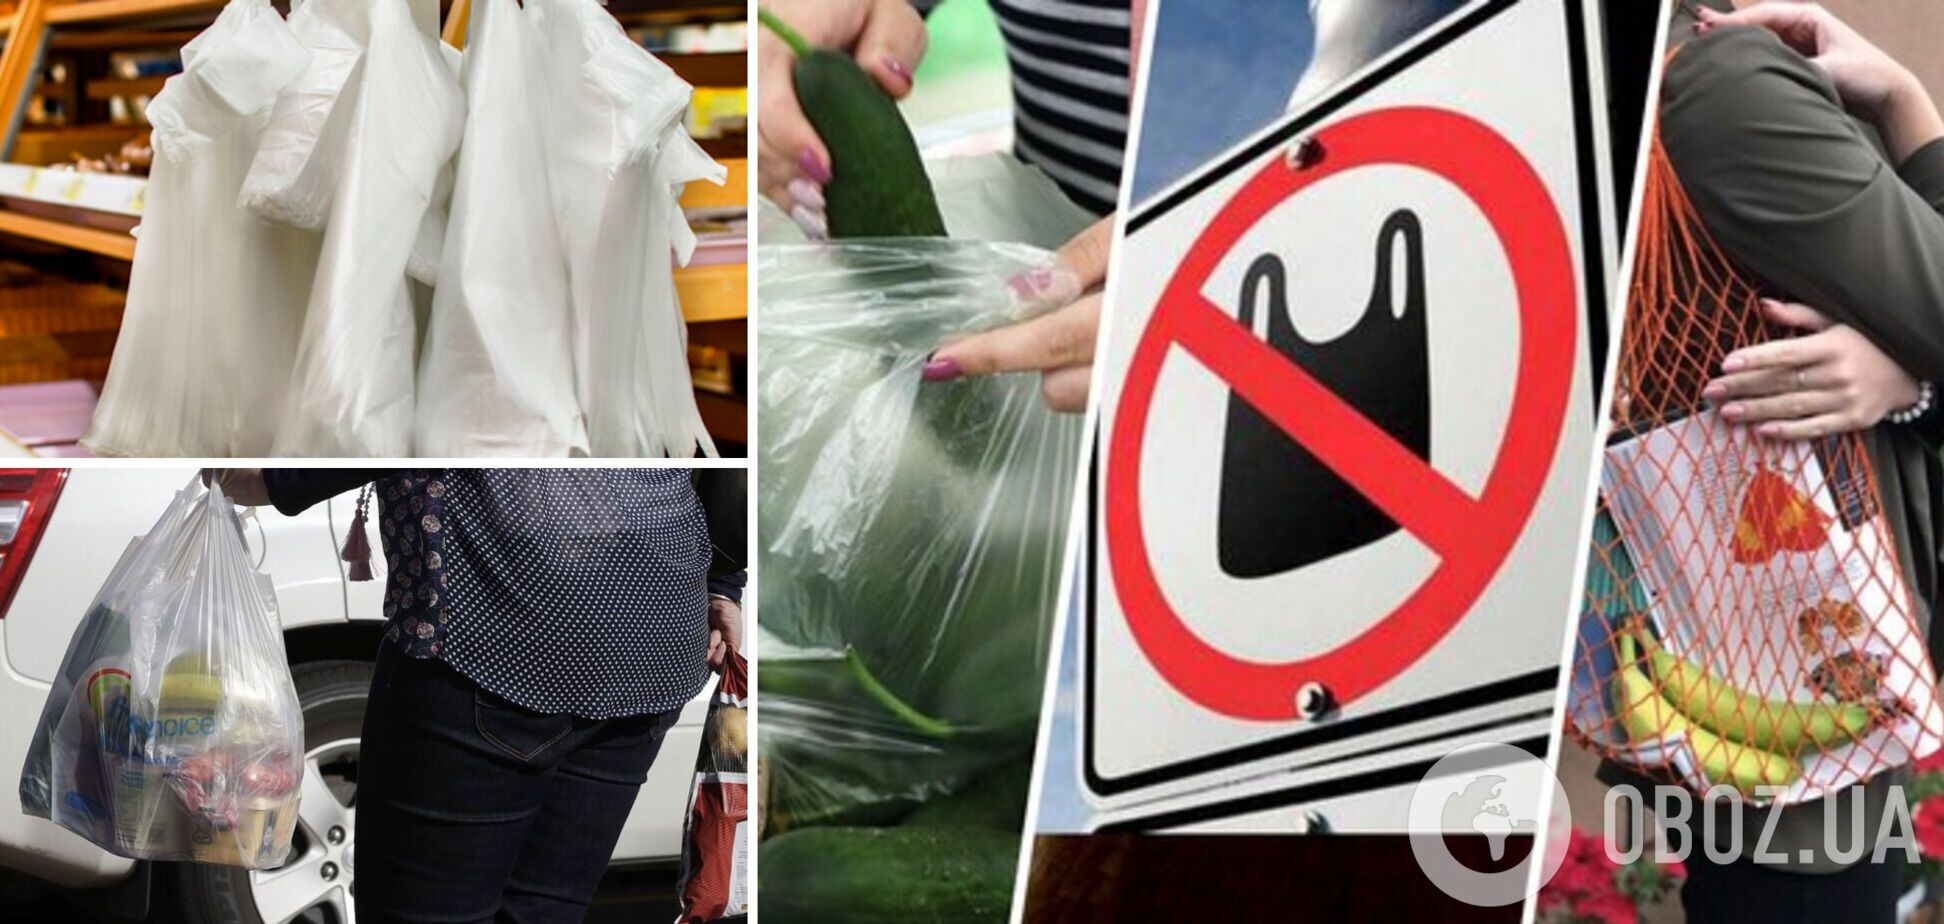 Українцям доведеться платити за пластикові пакети в магазинах та супермаркетах